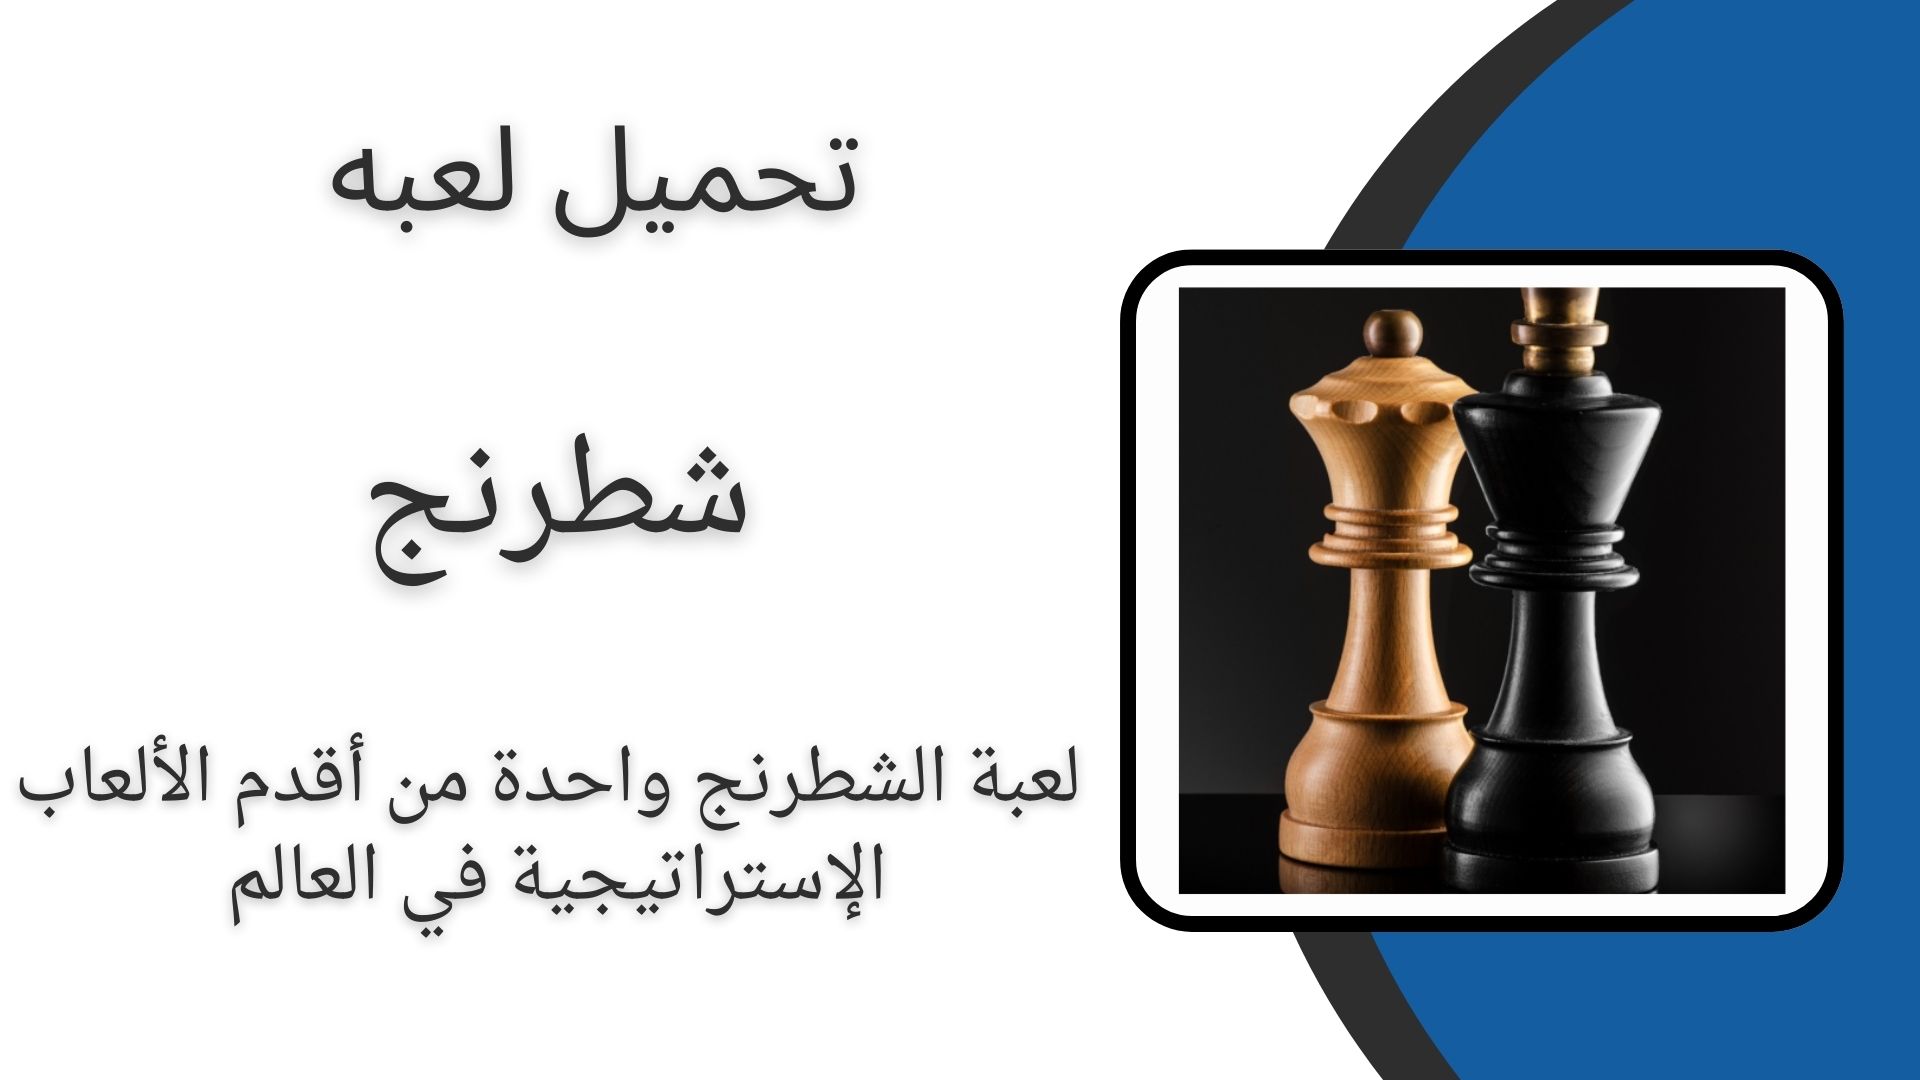 تحميل افضل واقوى لعبة شطرنج للاندرويد بدون انترنت apk احدث اصدار